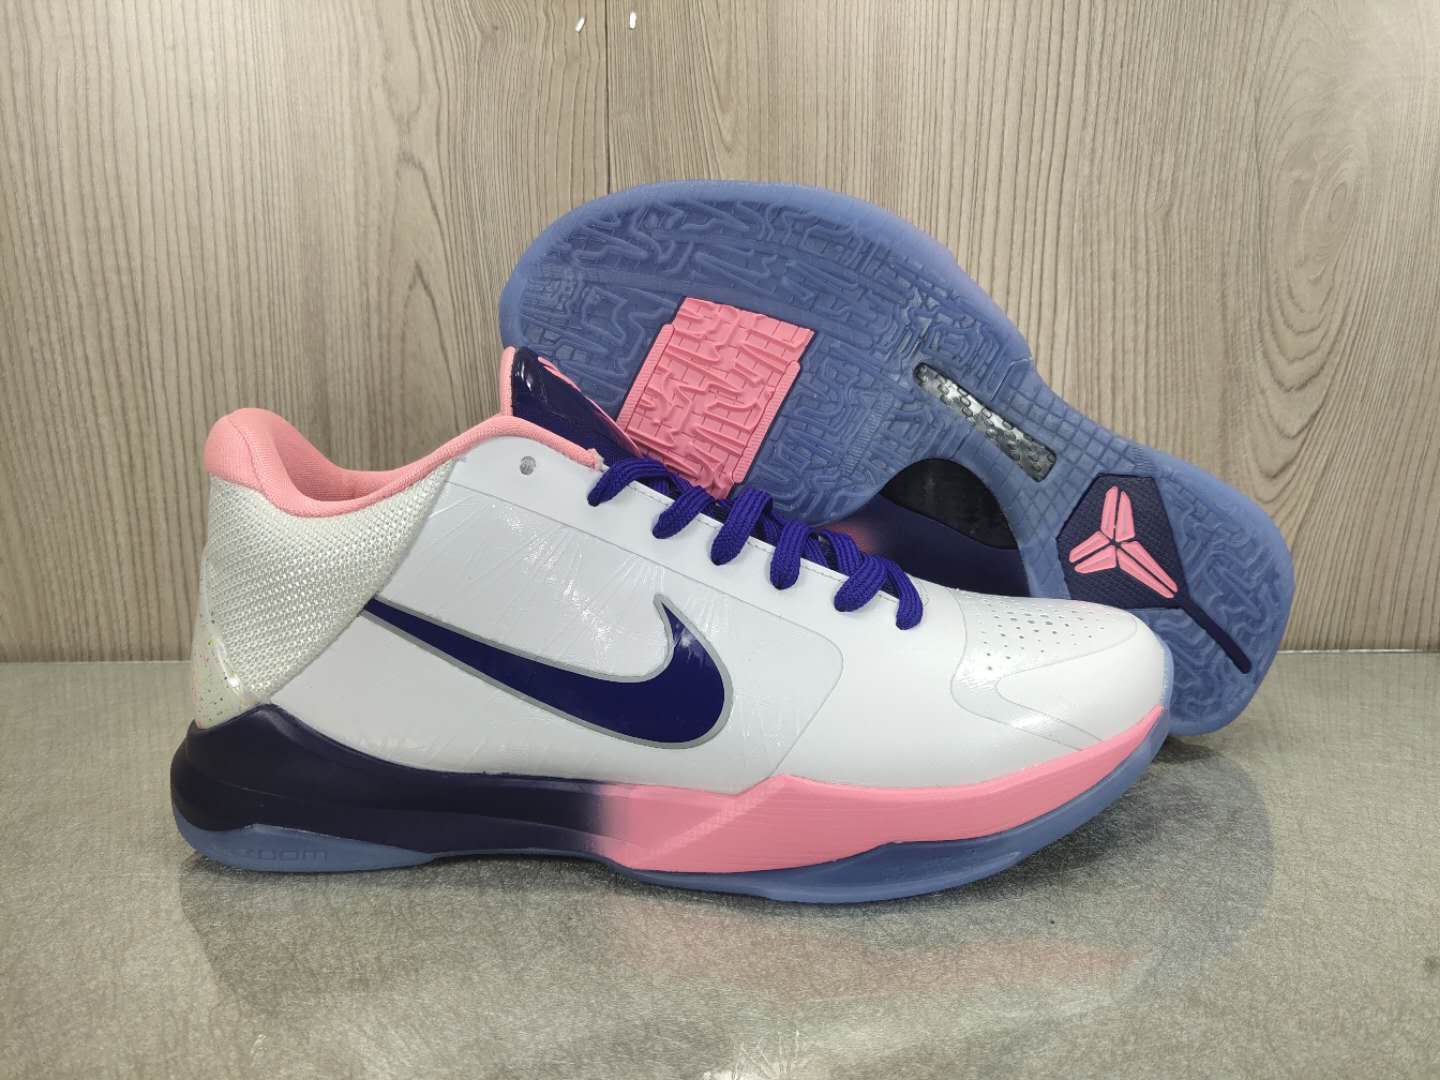 2020 Nike Kobe Bryant V White Pink Blue Black